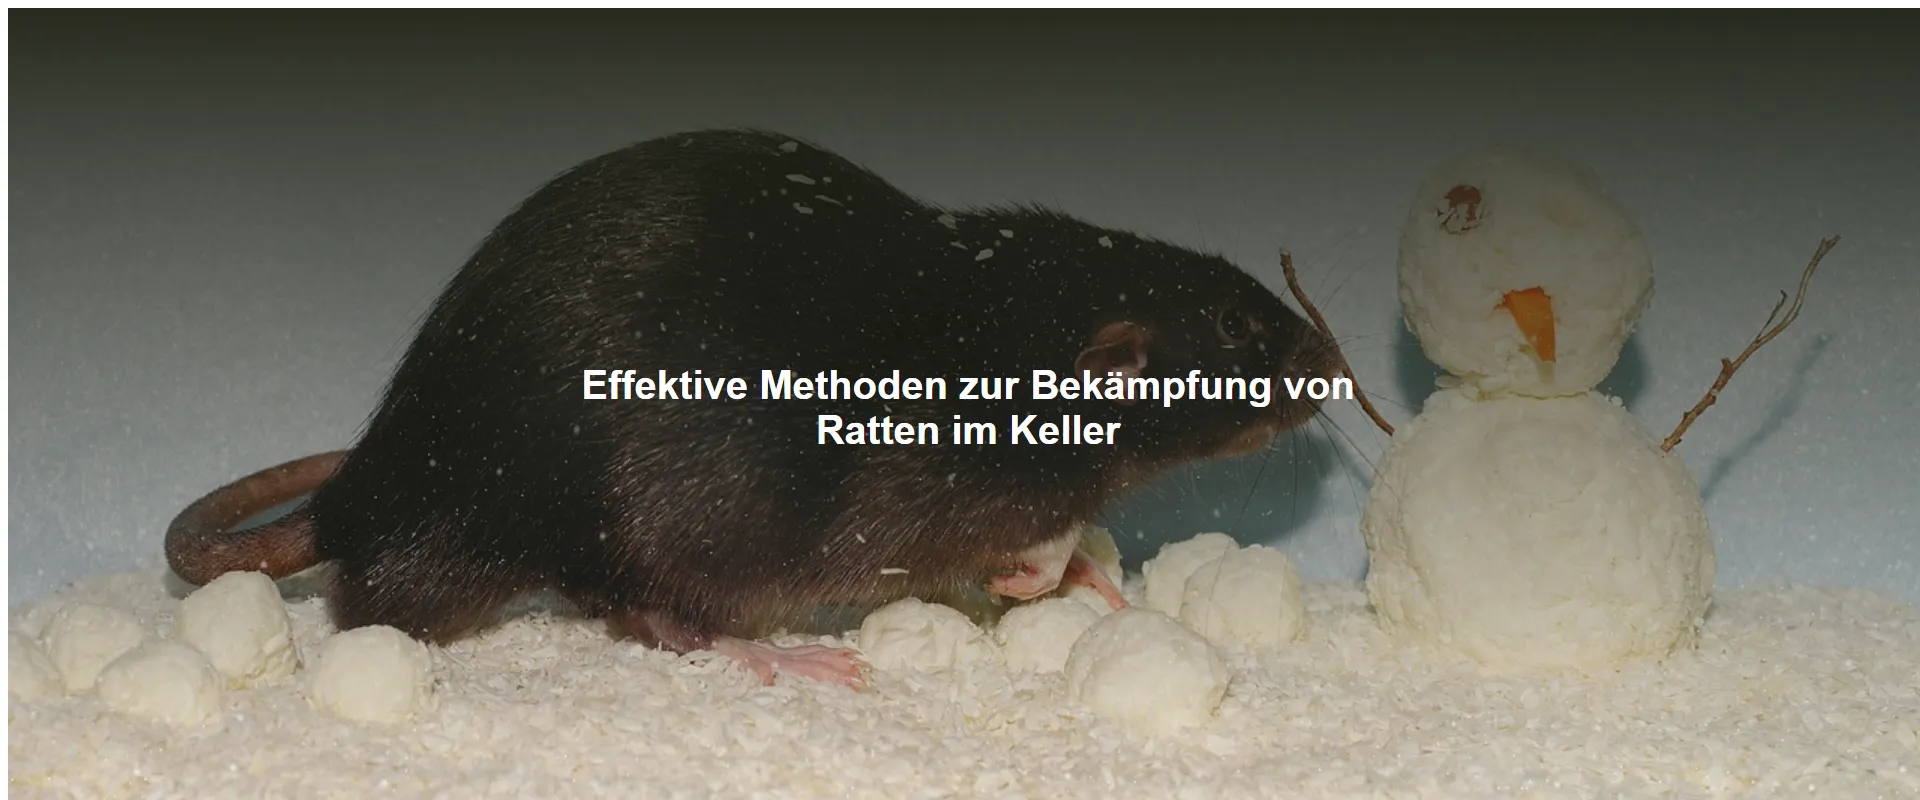 Effektive Methoden zur Bekämpfung von Ratten im Keller